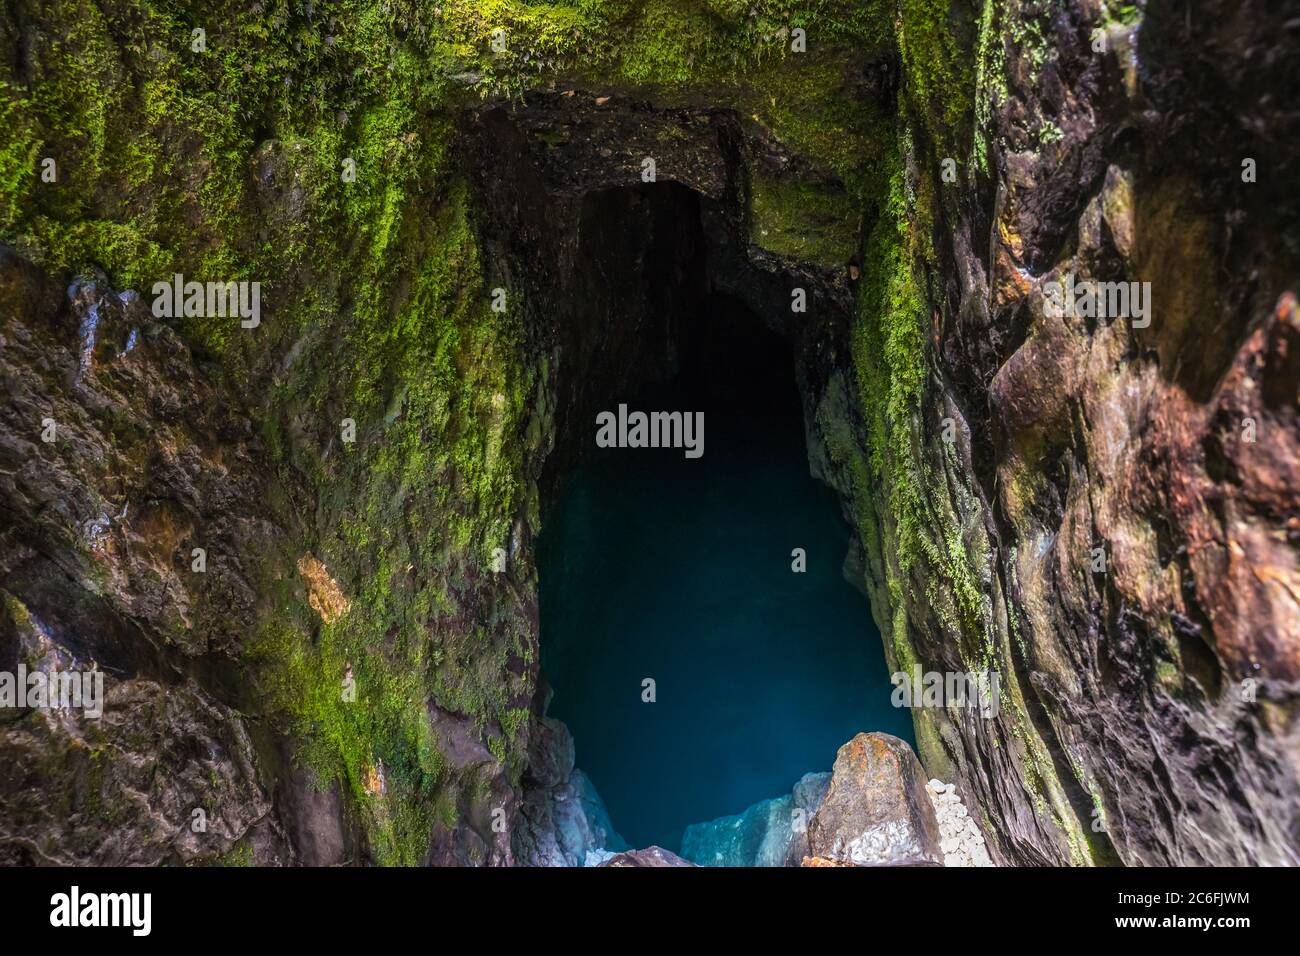 La sorgente bassin del fiume Soca, un piccolo nascosto nelle rocce della Valle del Trenta nel Parco Nazionale del Triglav in Slovenia. Foto Stock